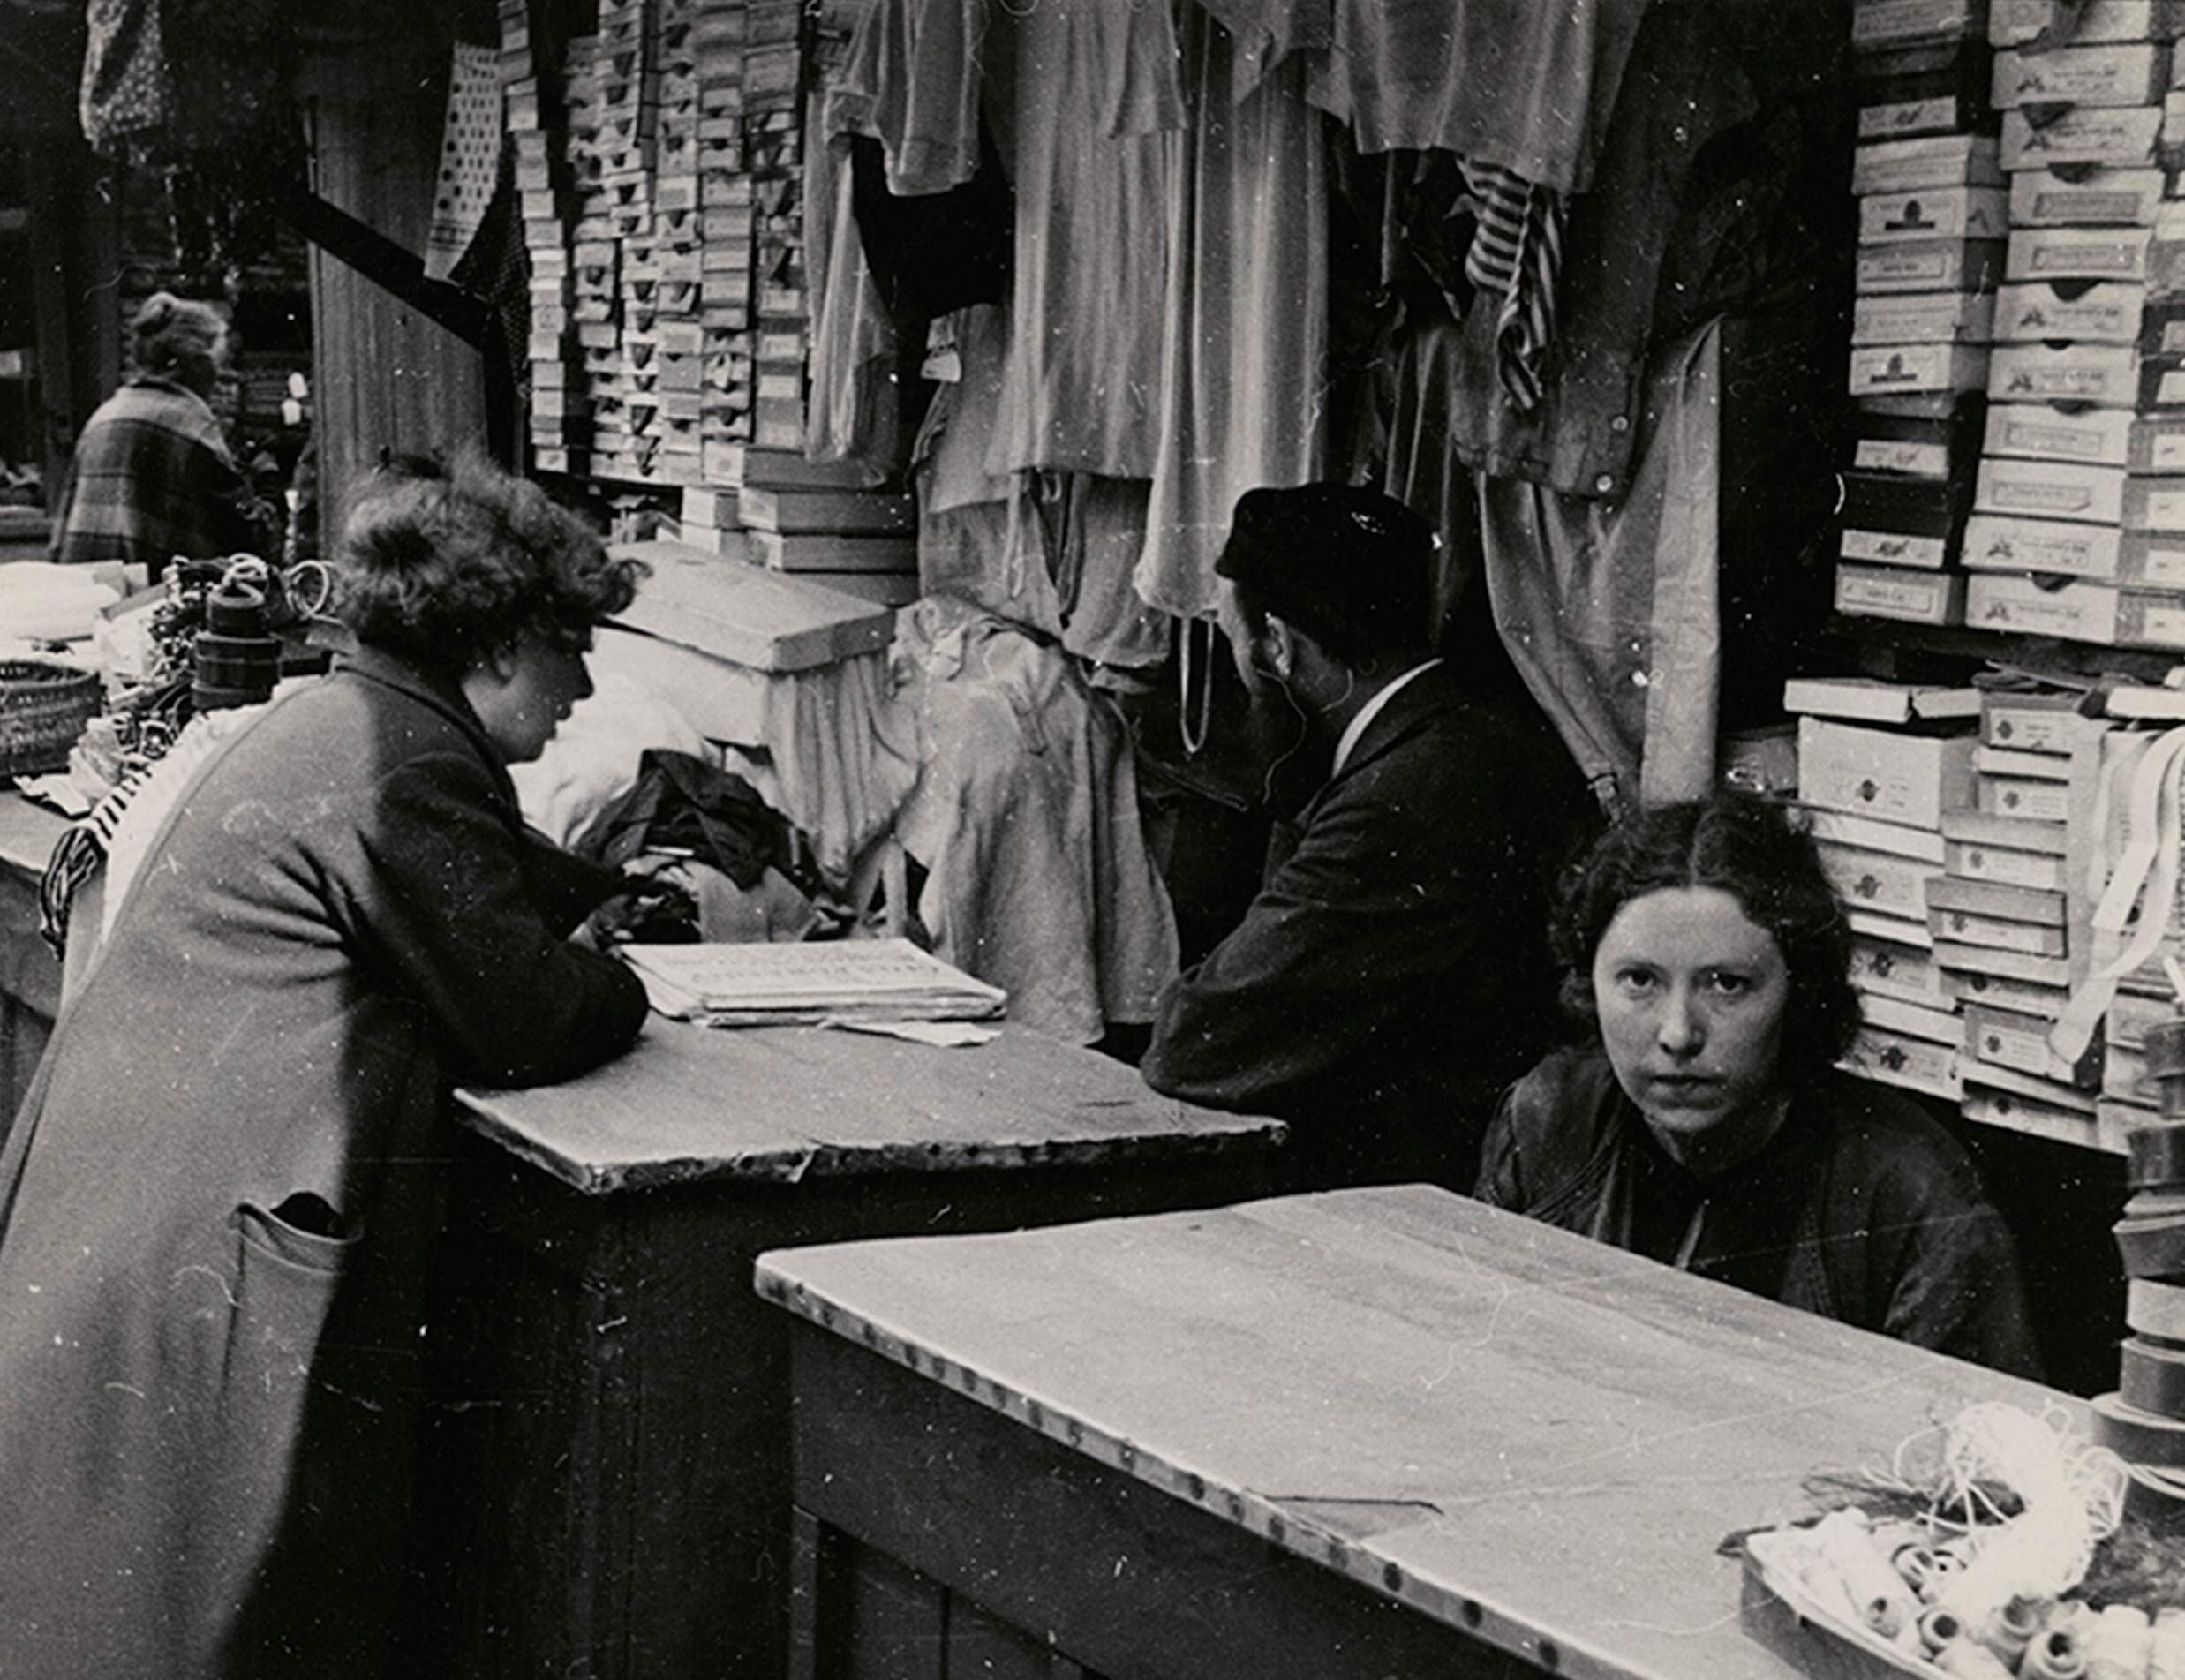 Галантерея на открытом рынке, Варшава, ок. 1935-38 гг. Фотограф Роман Вишняк